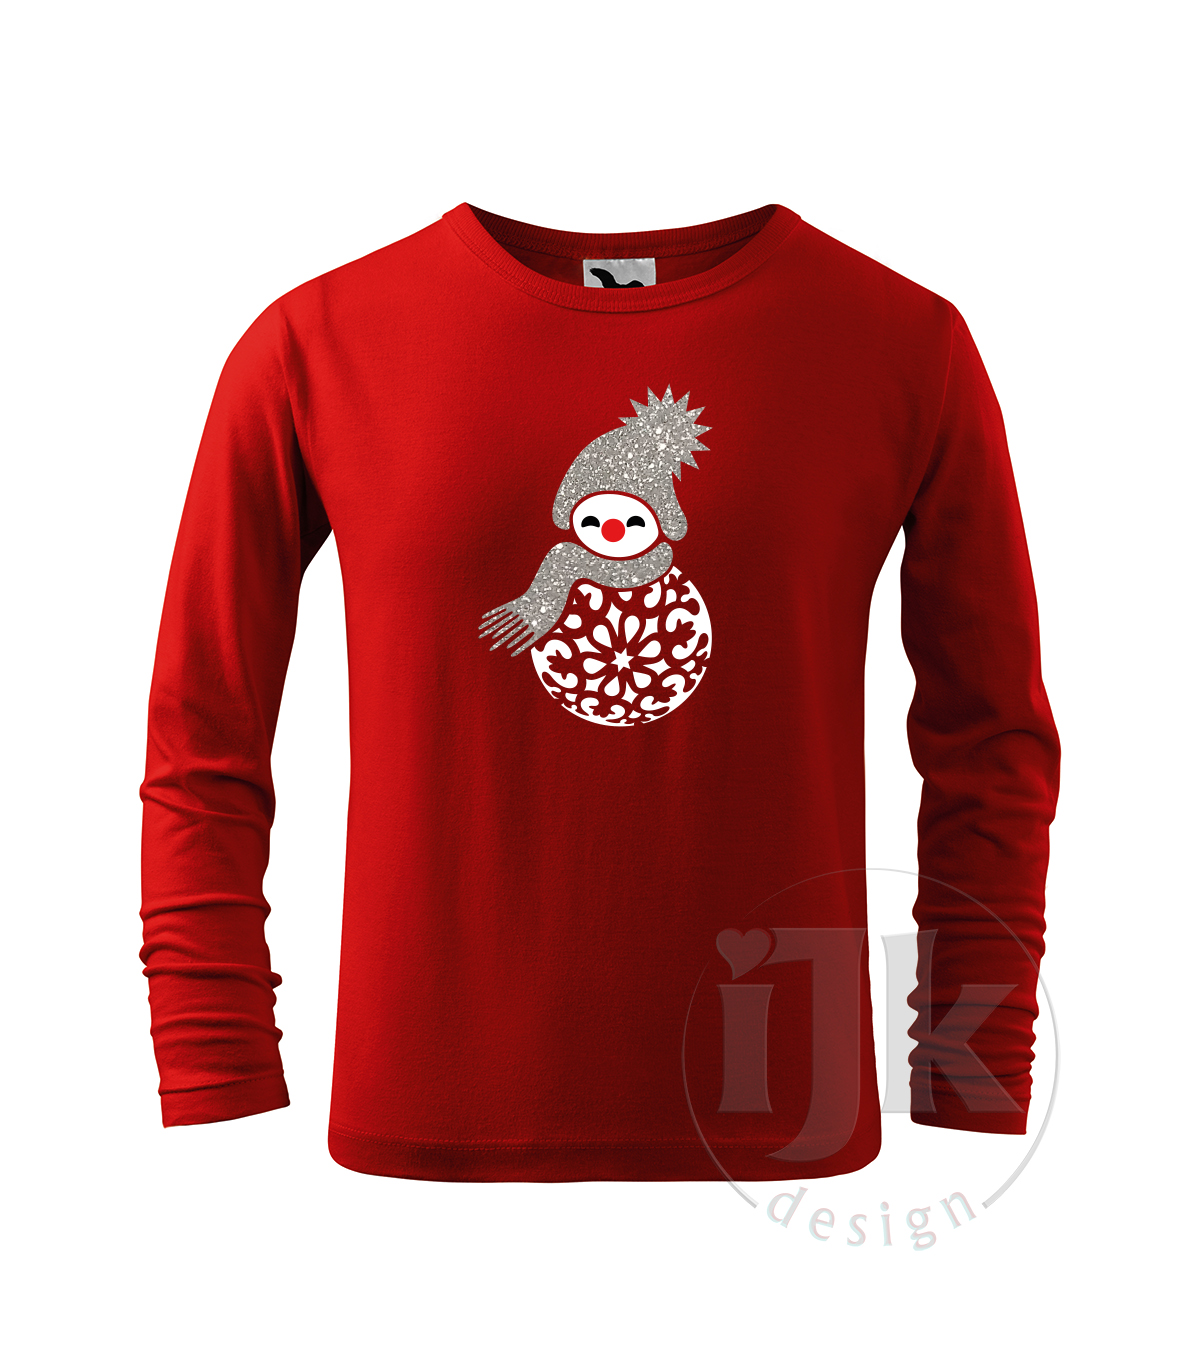 Detské červené tričko s potlačou, so striebornou glitrovou a bielou hladkou fóliou, s autorským zimným vzorom, motívom je snehuliak v netradičnom prevedení, časť jeho tela tvorí vianočná guľa a s dlhým rukávom.